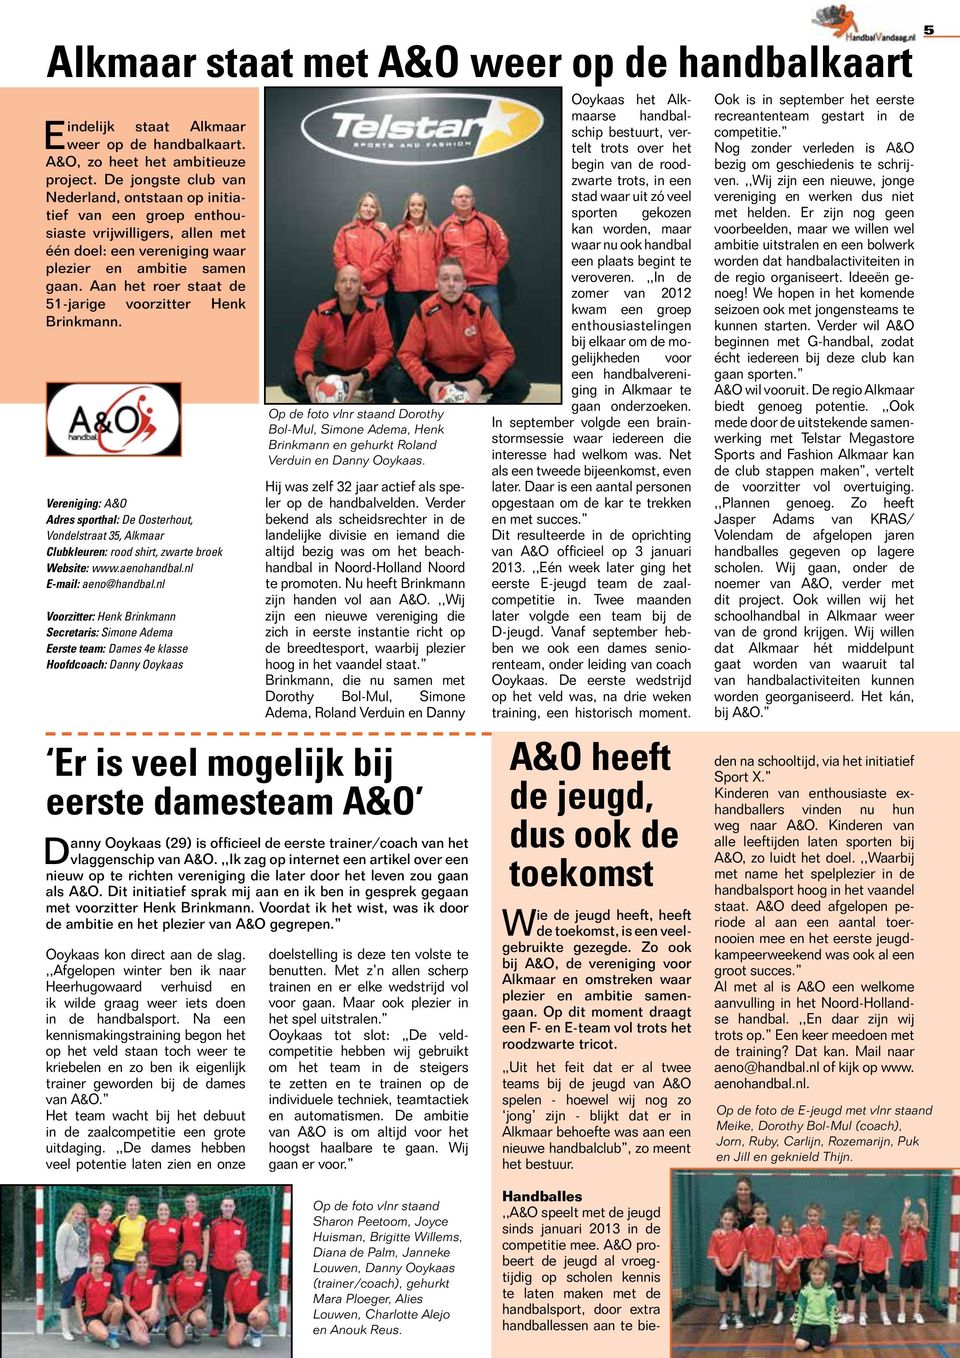 Aan het roer staat de 51-jarige voorzitter Henk Brinkmann. Vereniging: A&O Adres sporthal: De Oosterhout, Vondelstraat 35, Alkmaar Clubkleuren: rood shirt, zwarte broek Website: www.aenohandbal.